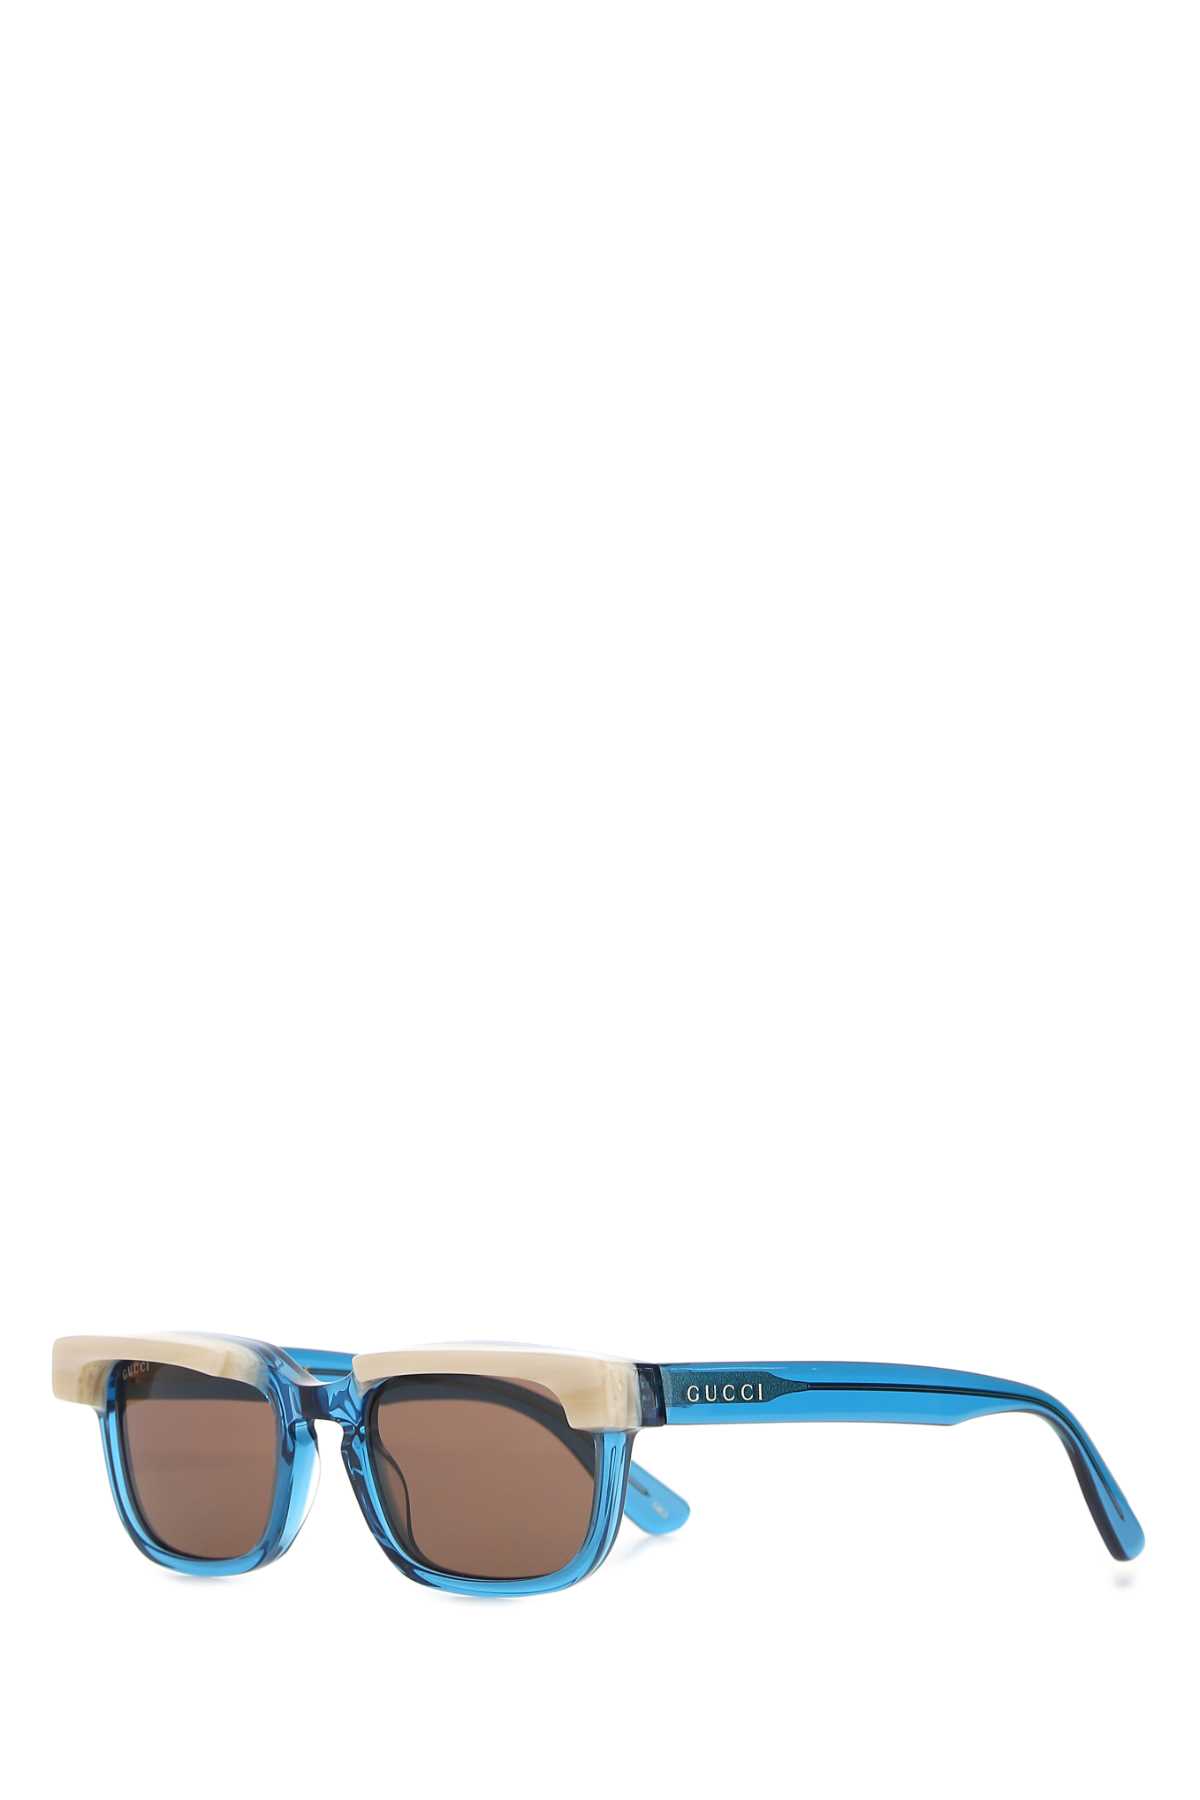 Shop Gucci Light Blue Acetate Sunglasses In 4623